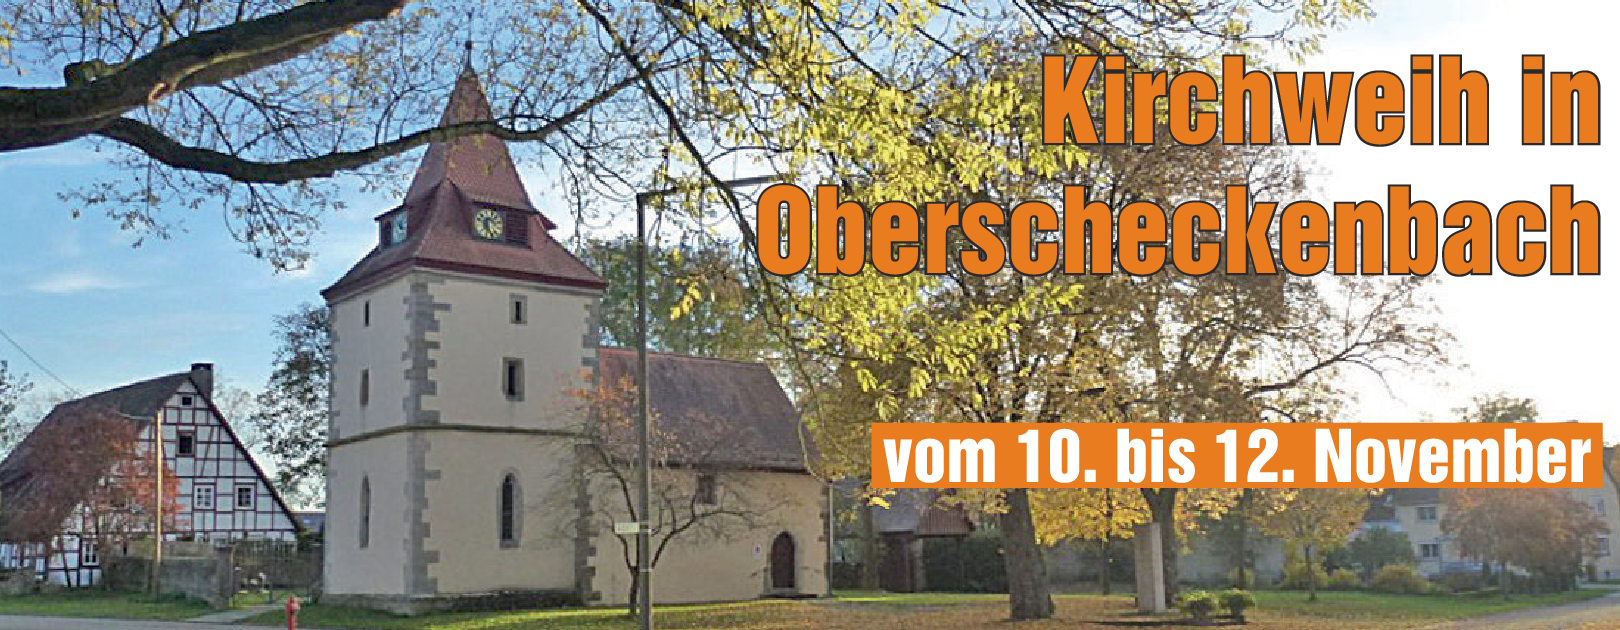 Grußwort des Bürgermeisters zur Kirchweih in Oberscheckenbach